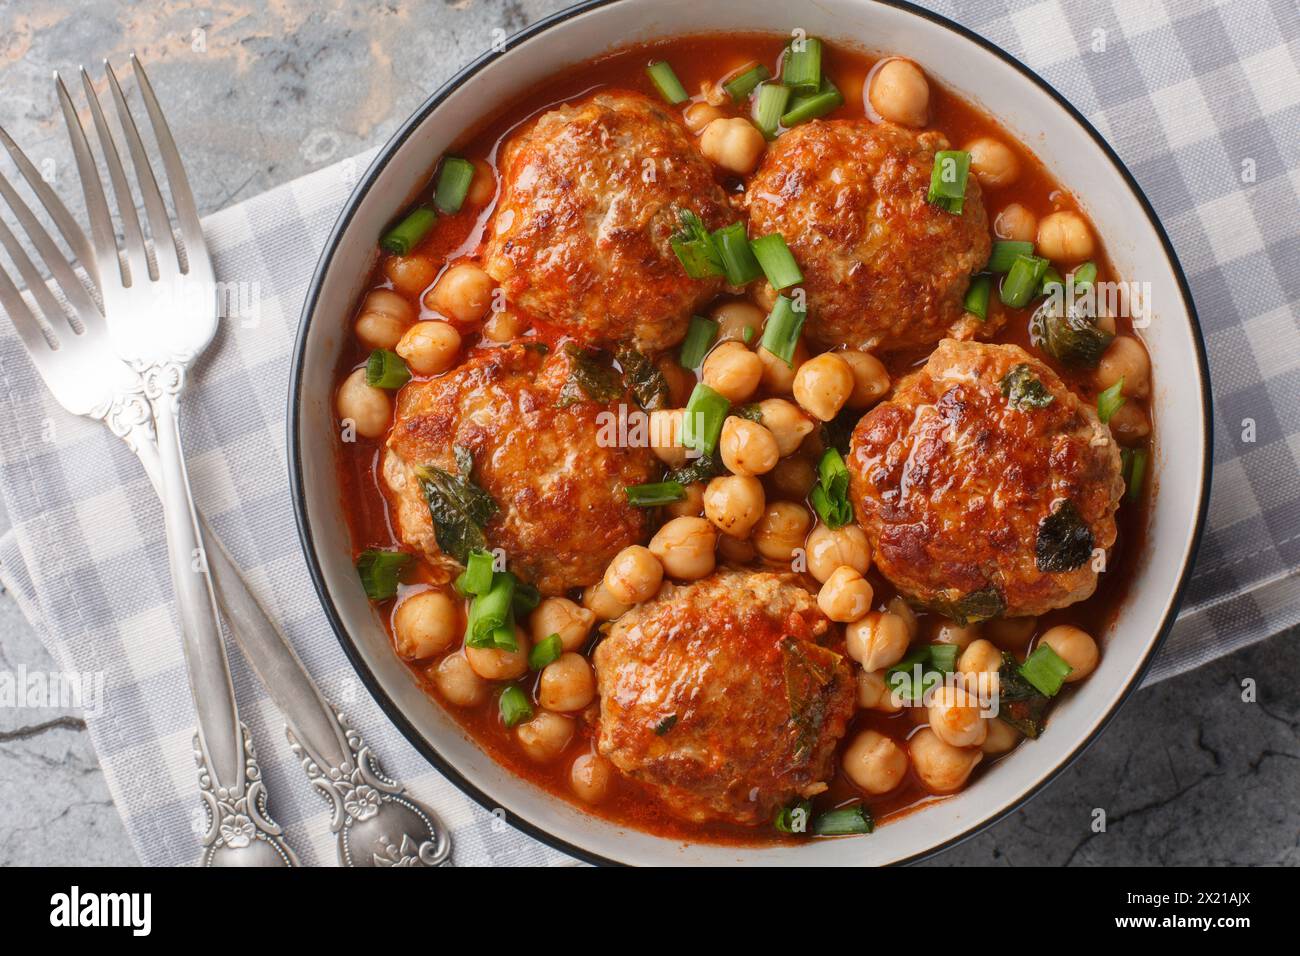 Cuisine méditerranéenne boulettes d'agneau servies avec pois chiches, tomates et oignons verts gros plan dans un bol sur la table. Vue horizontale de dessus Banque D'Images